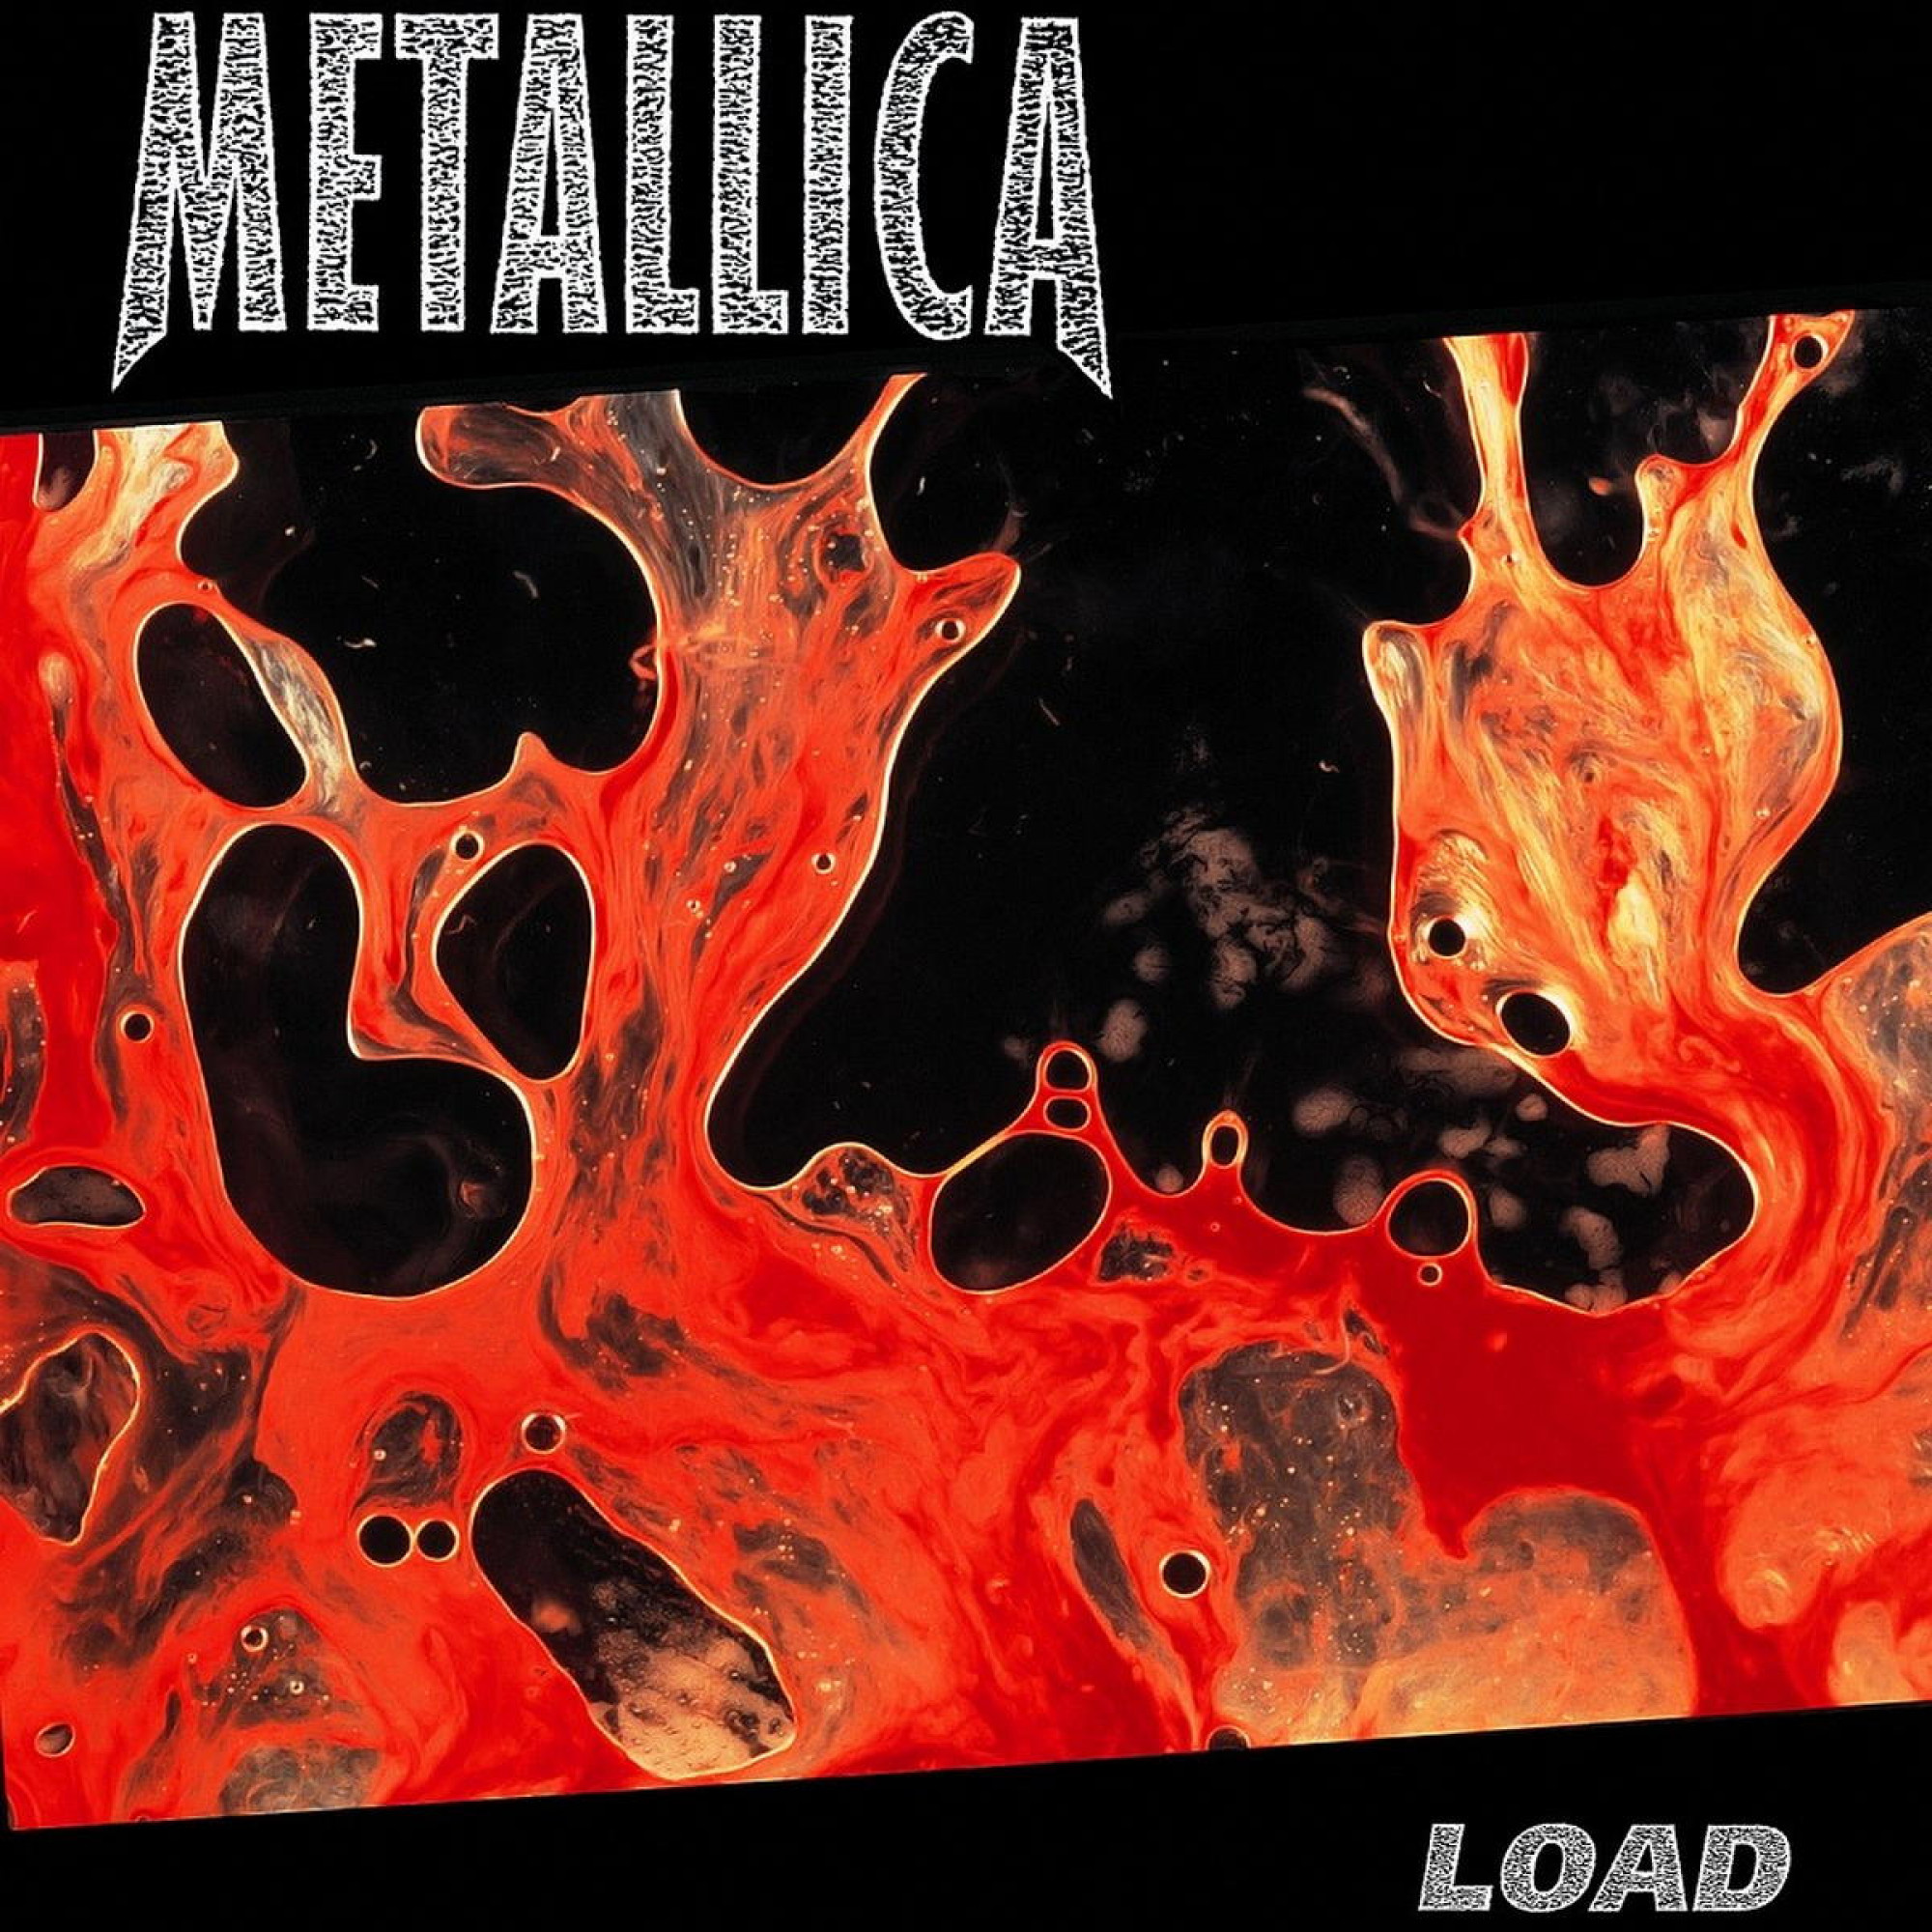 17 Metallica [Rare CDs to Collect] ideas